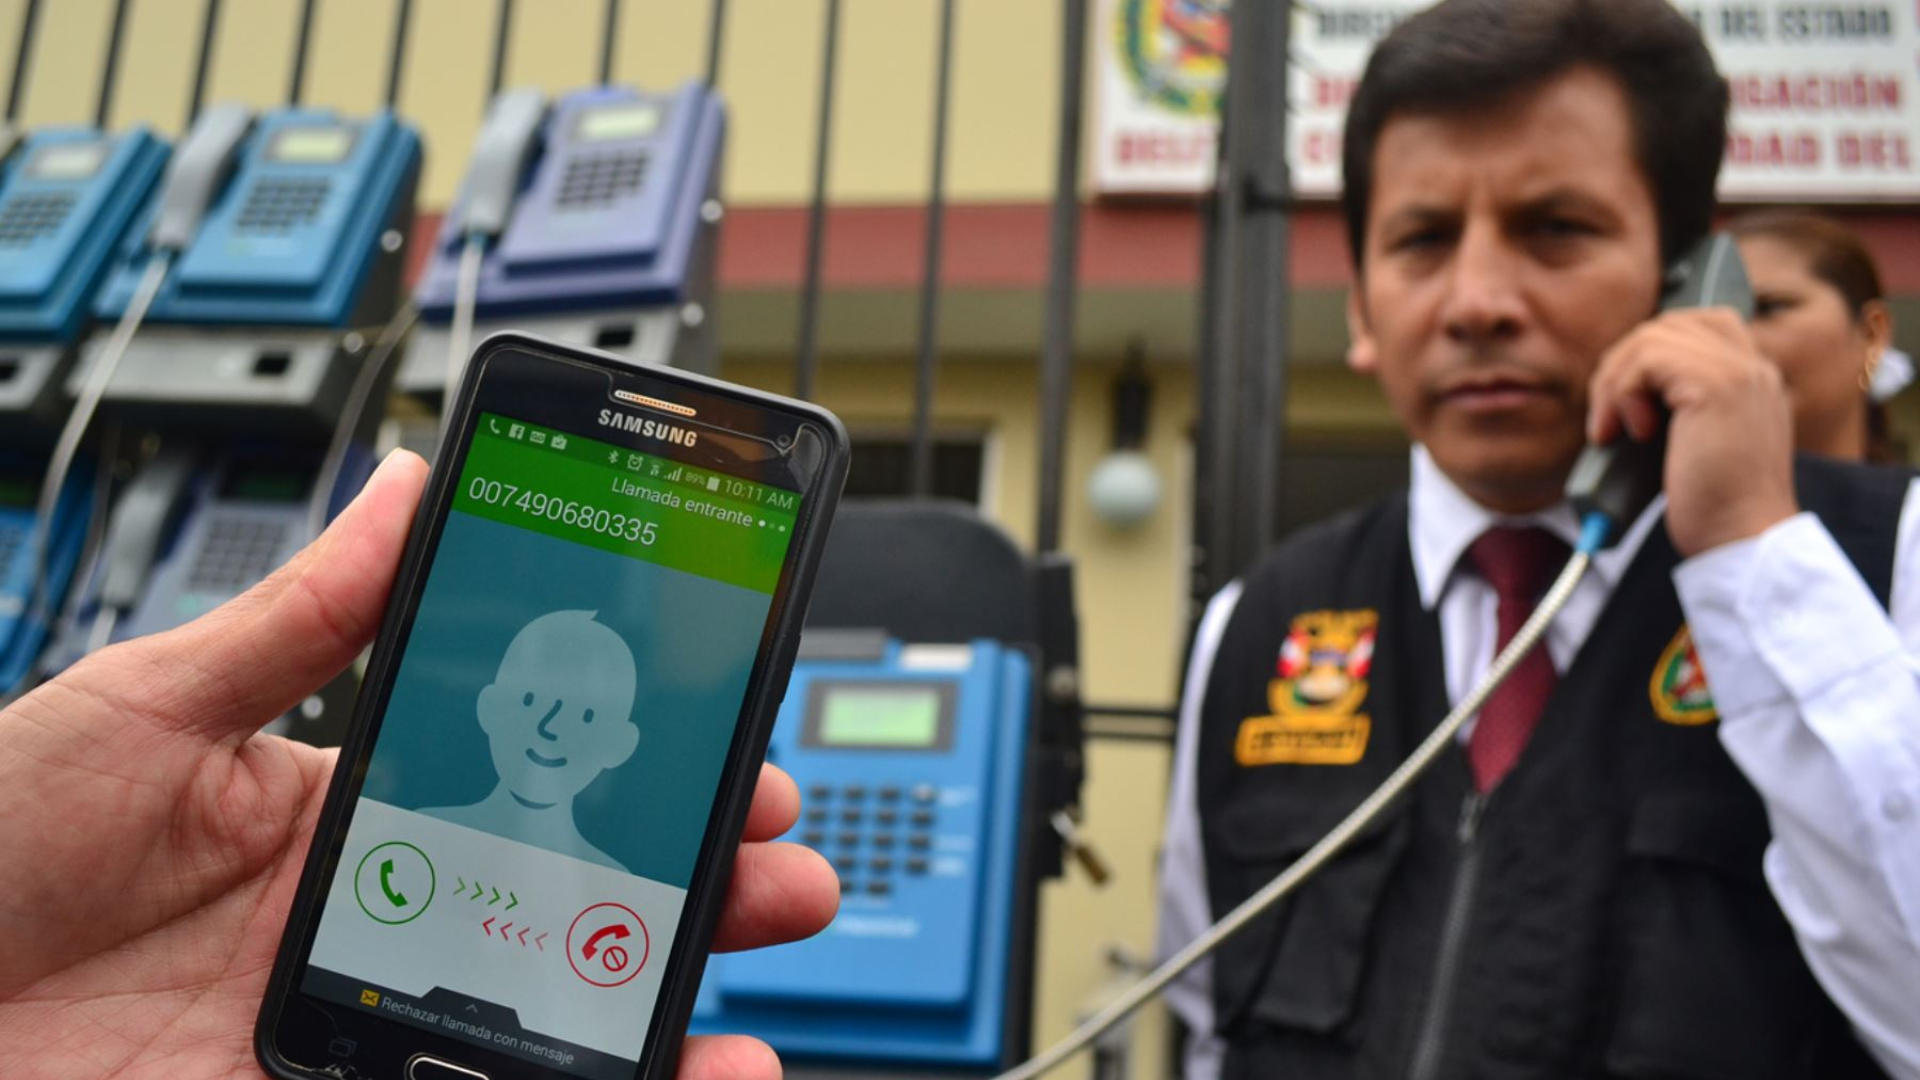 Delitos de extorsión ganan terreno en el Perú: se registran 45 denuncias al día en todo el país